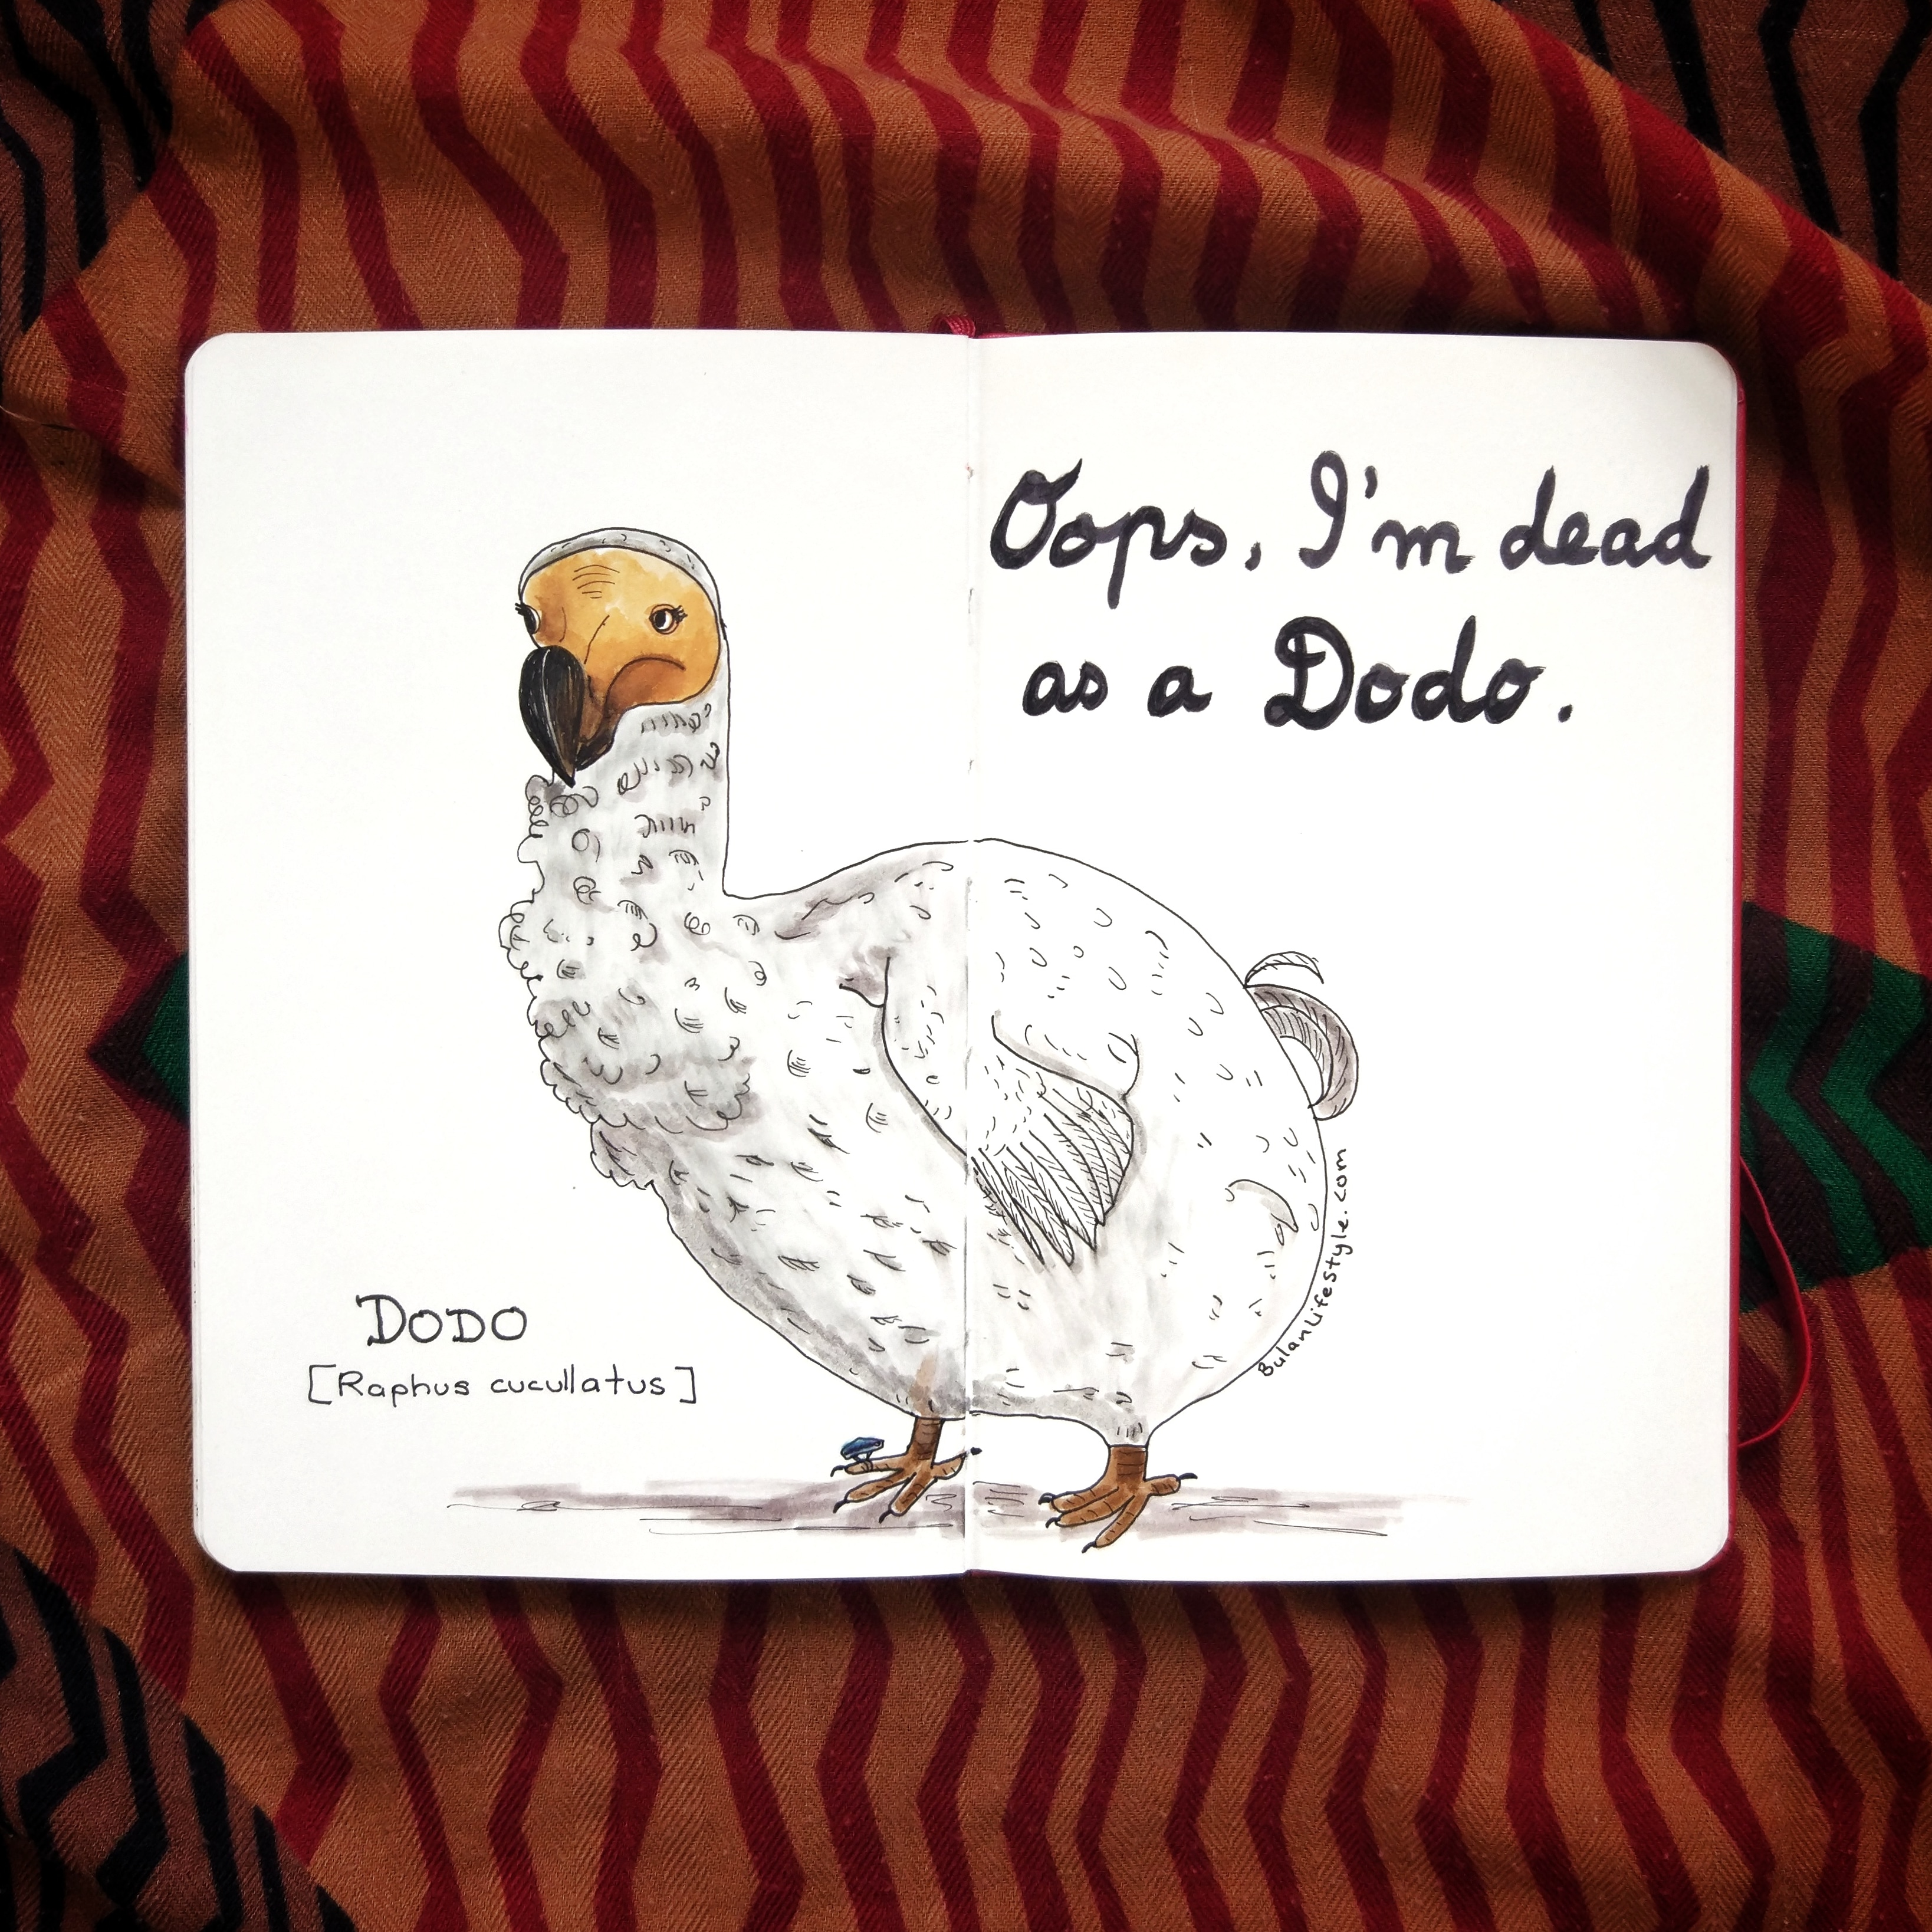 Oops, I’m dead as a dodo.